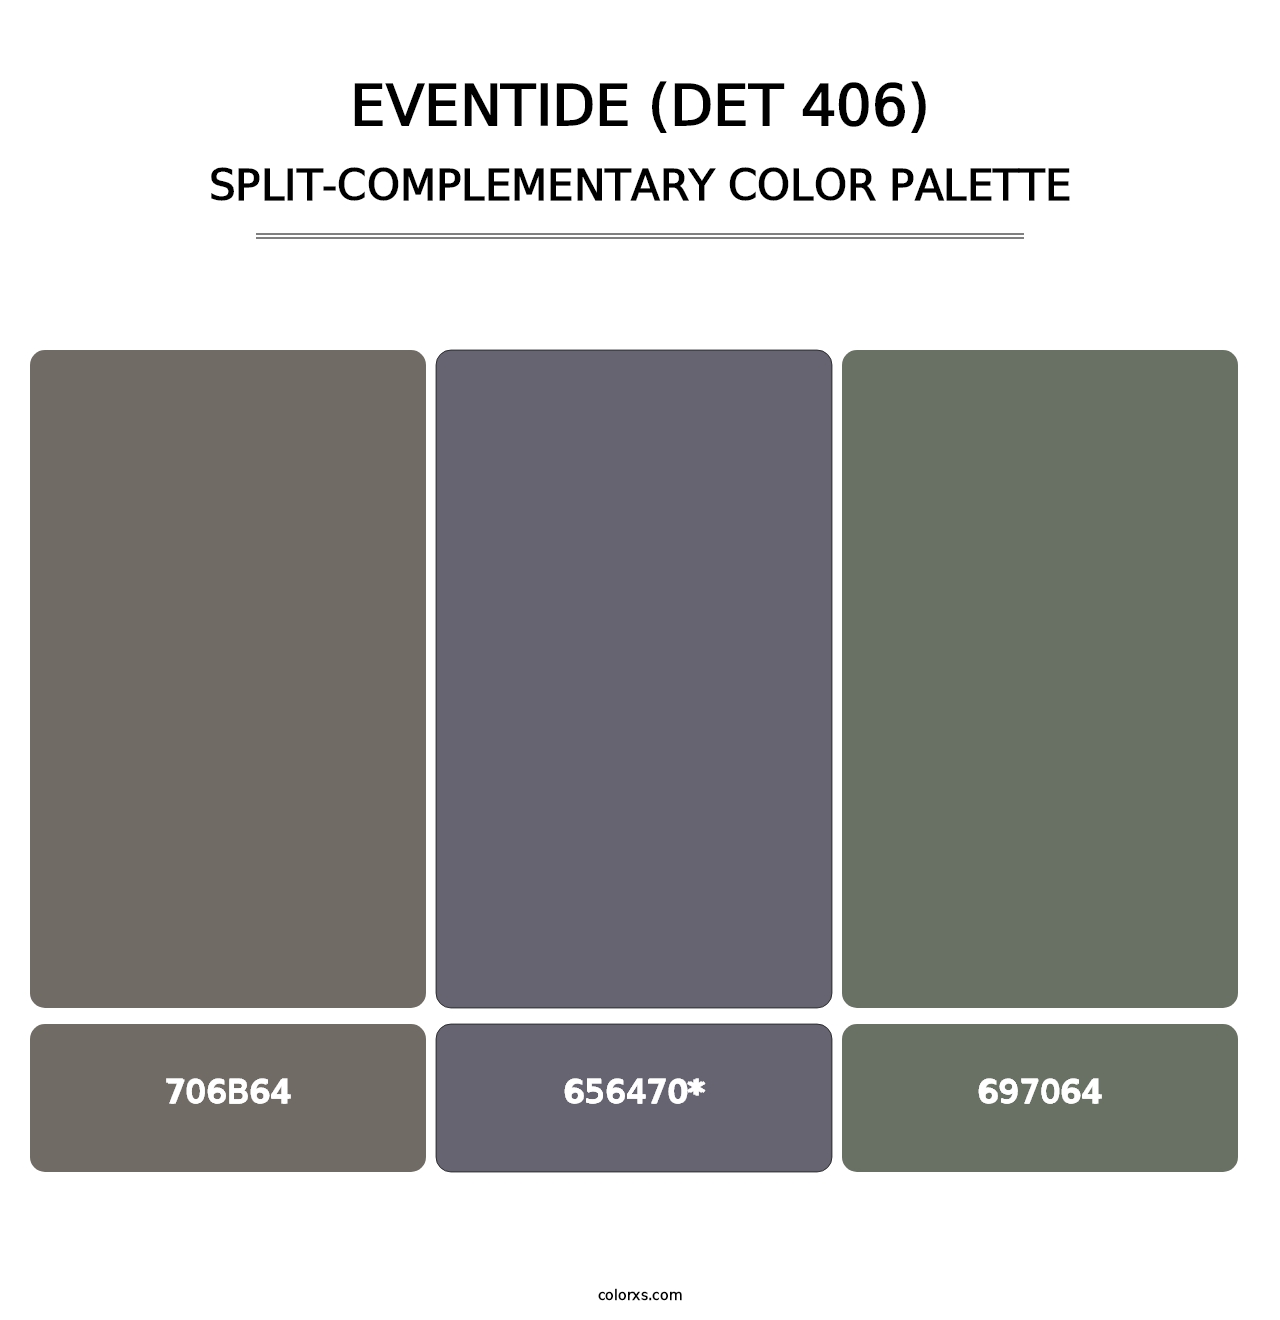 Eventide (DET 406) - Split-Complementary Color Palette